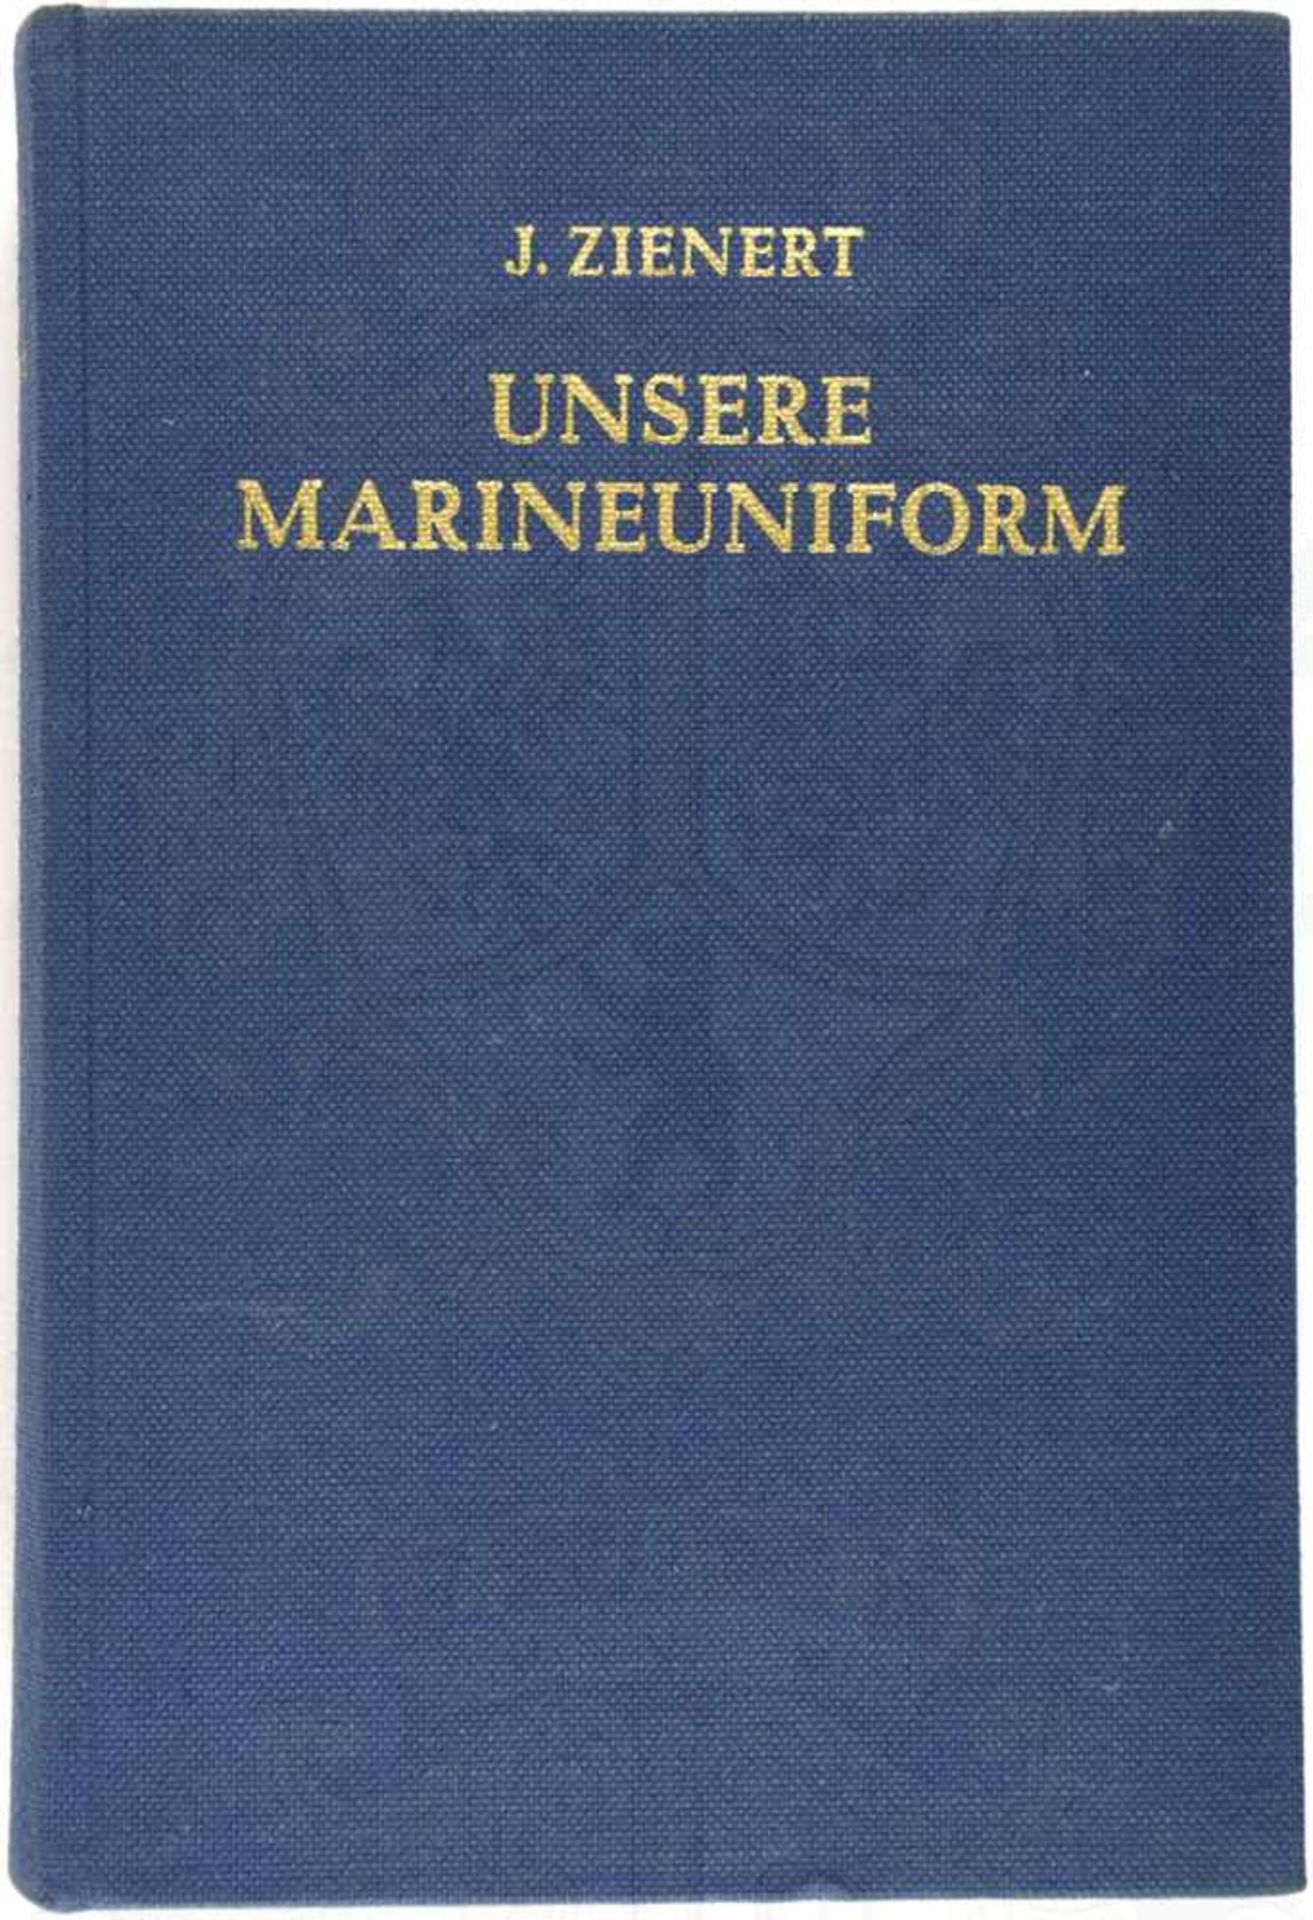 UNSERE MARINEUNIFORM, „Ihre geschichtliche Entwicklung...1816-1969“, Josef Zienert, Hamburg 1970,